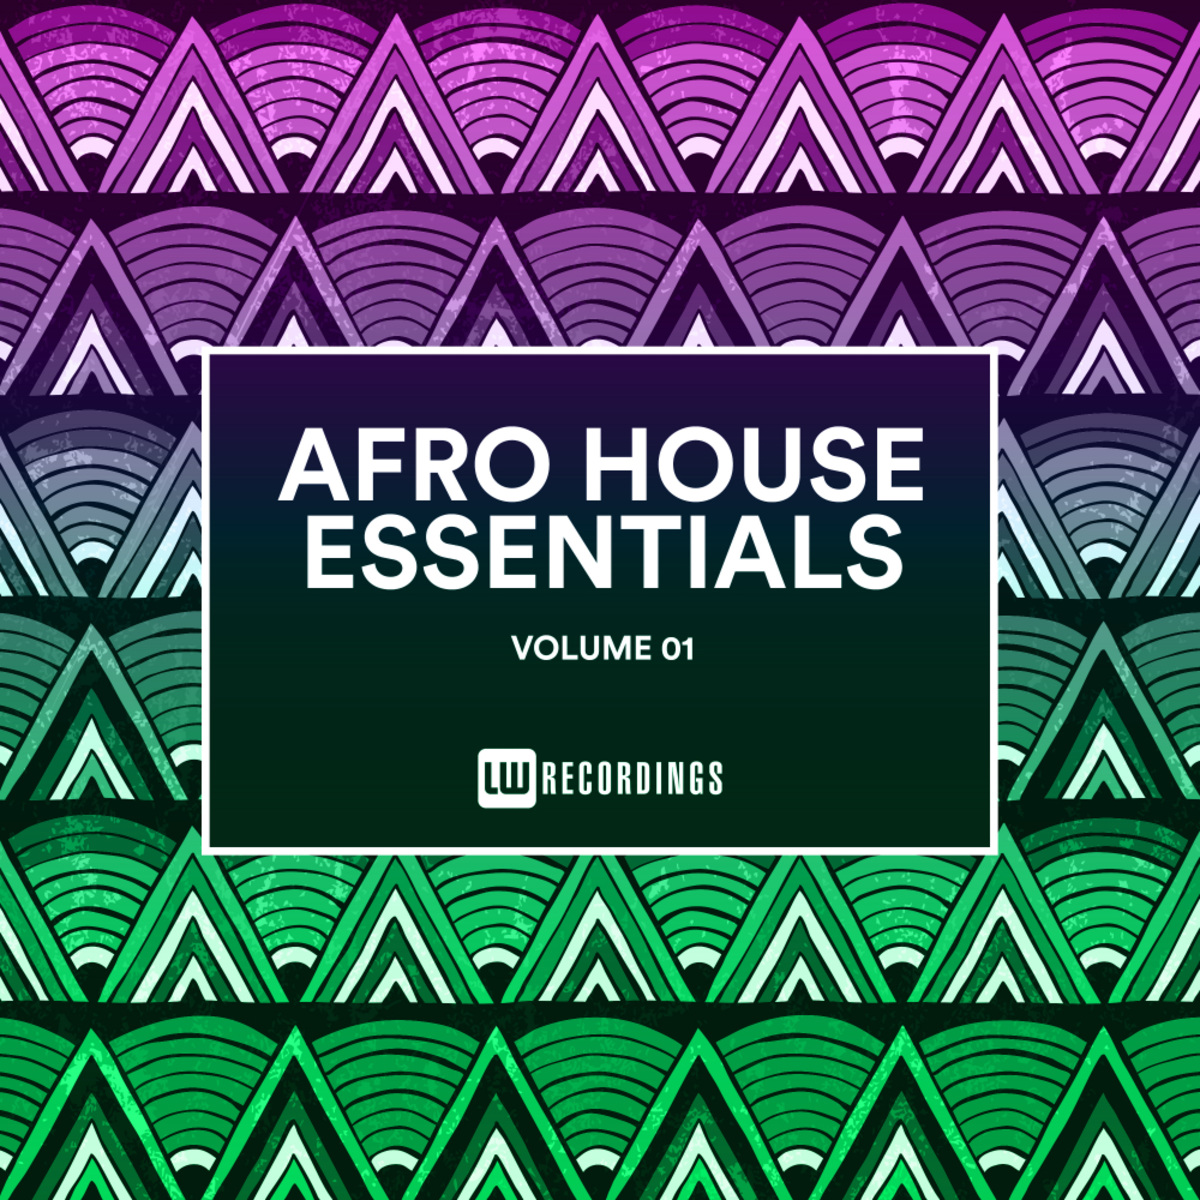 VA - Afro House Essentials, Vol. 01 / LW Recordings